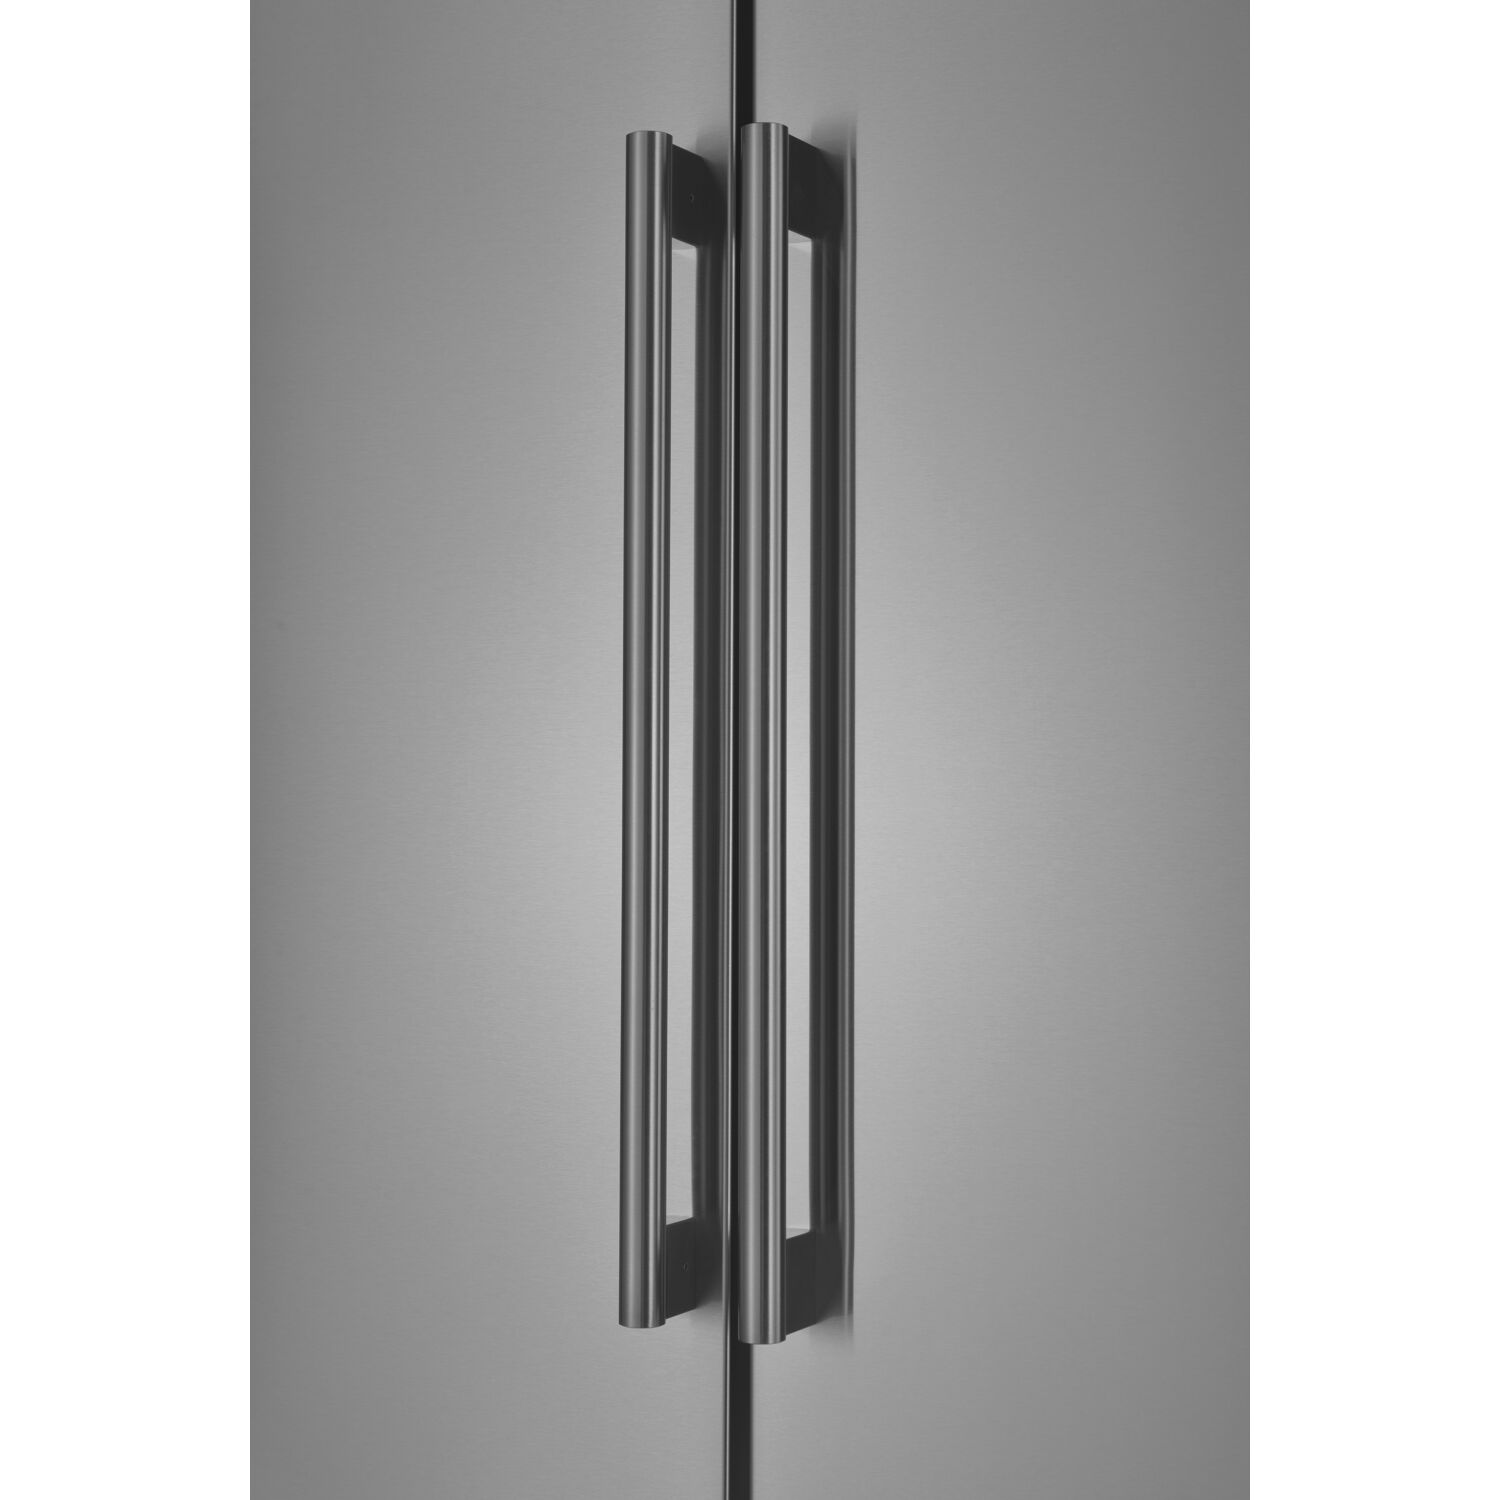 Galanz 16-Cu. Ft. 3-Door French Door Refrigerator, Stainless Steel - image 5 of 12